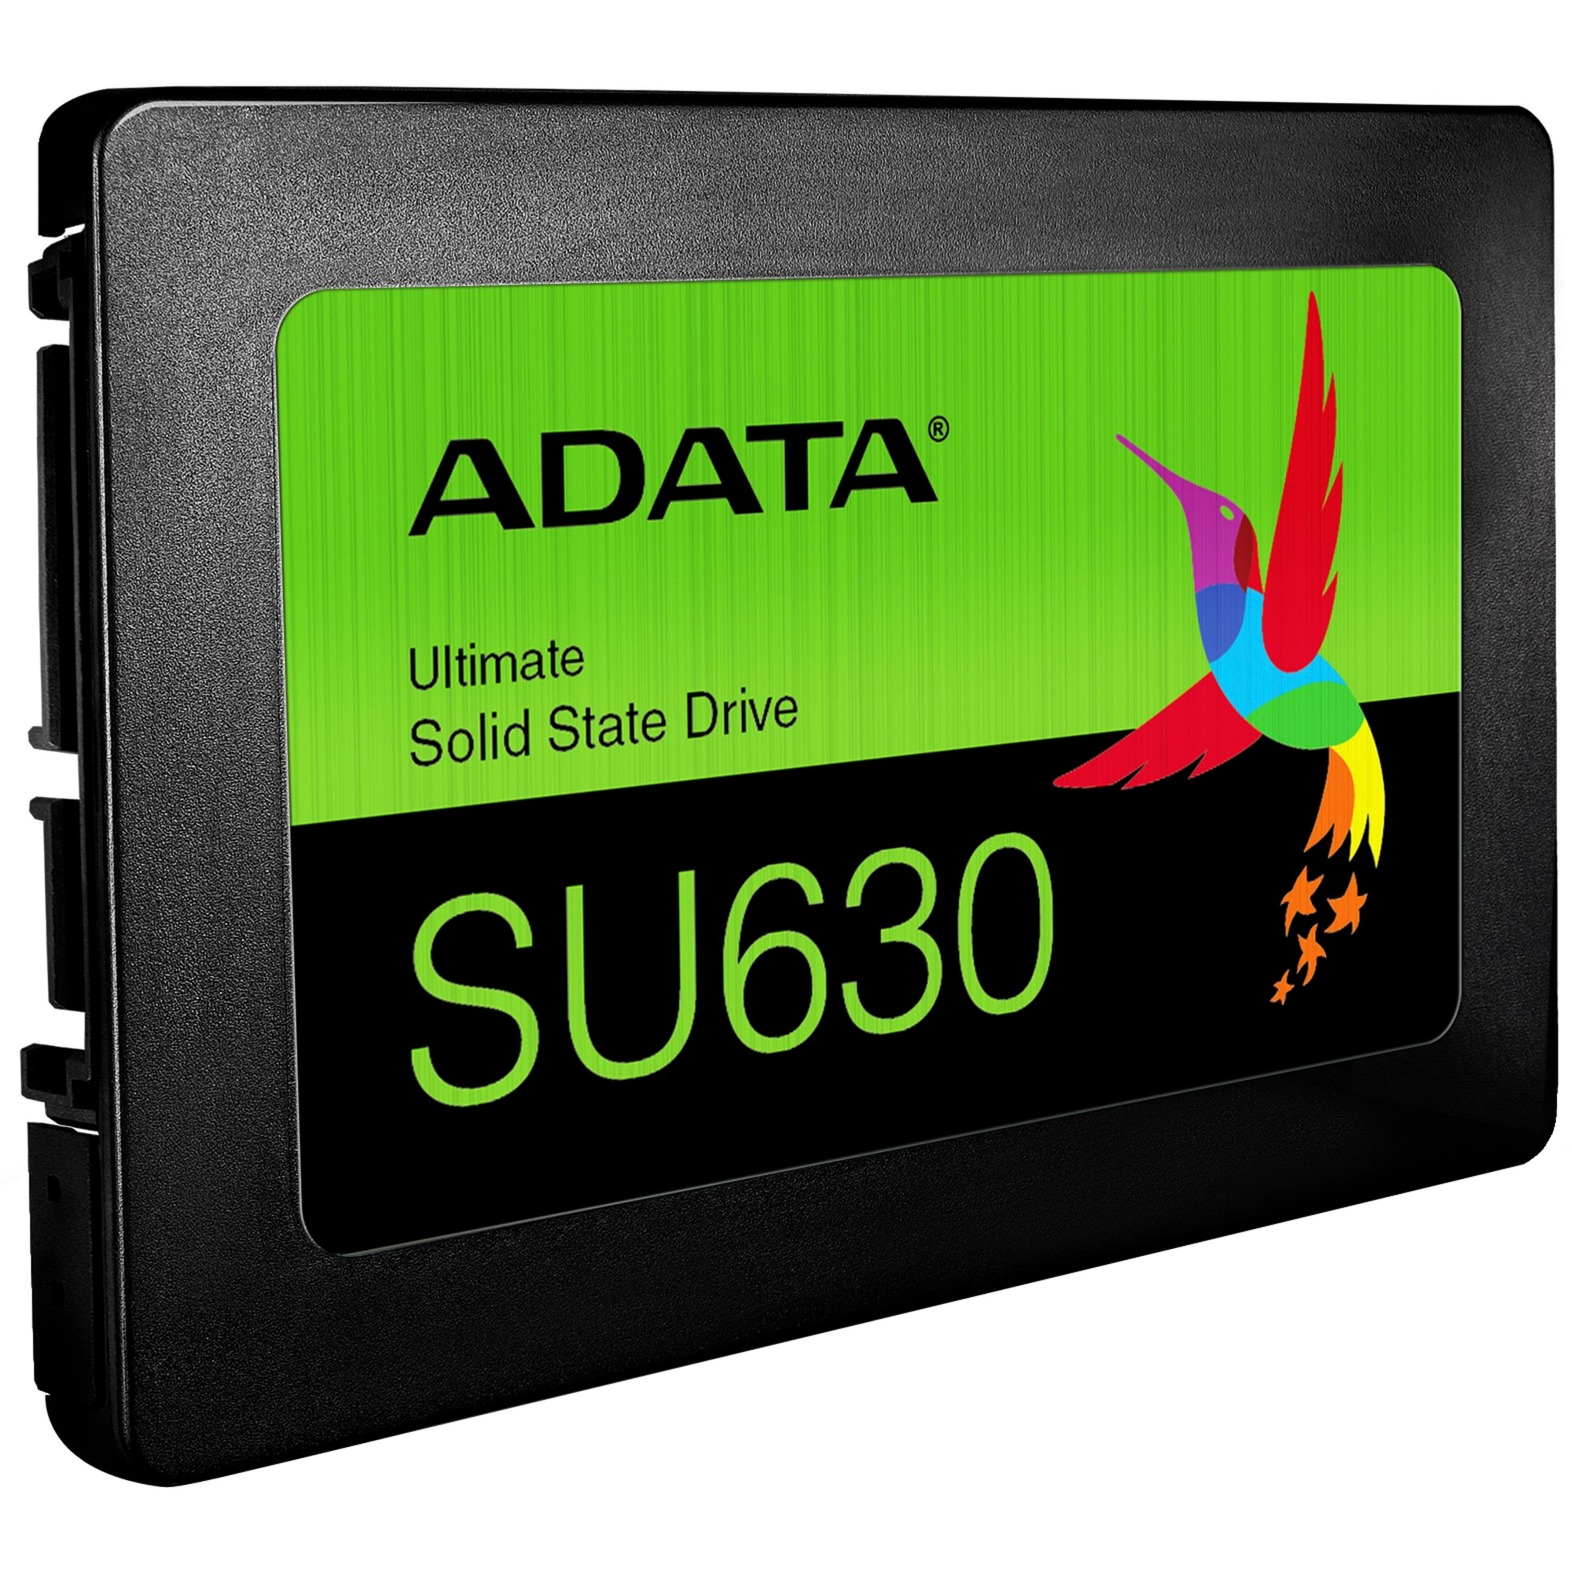 SU630 1,9 TB, SSD von ADATA